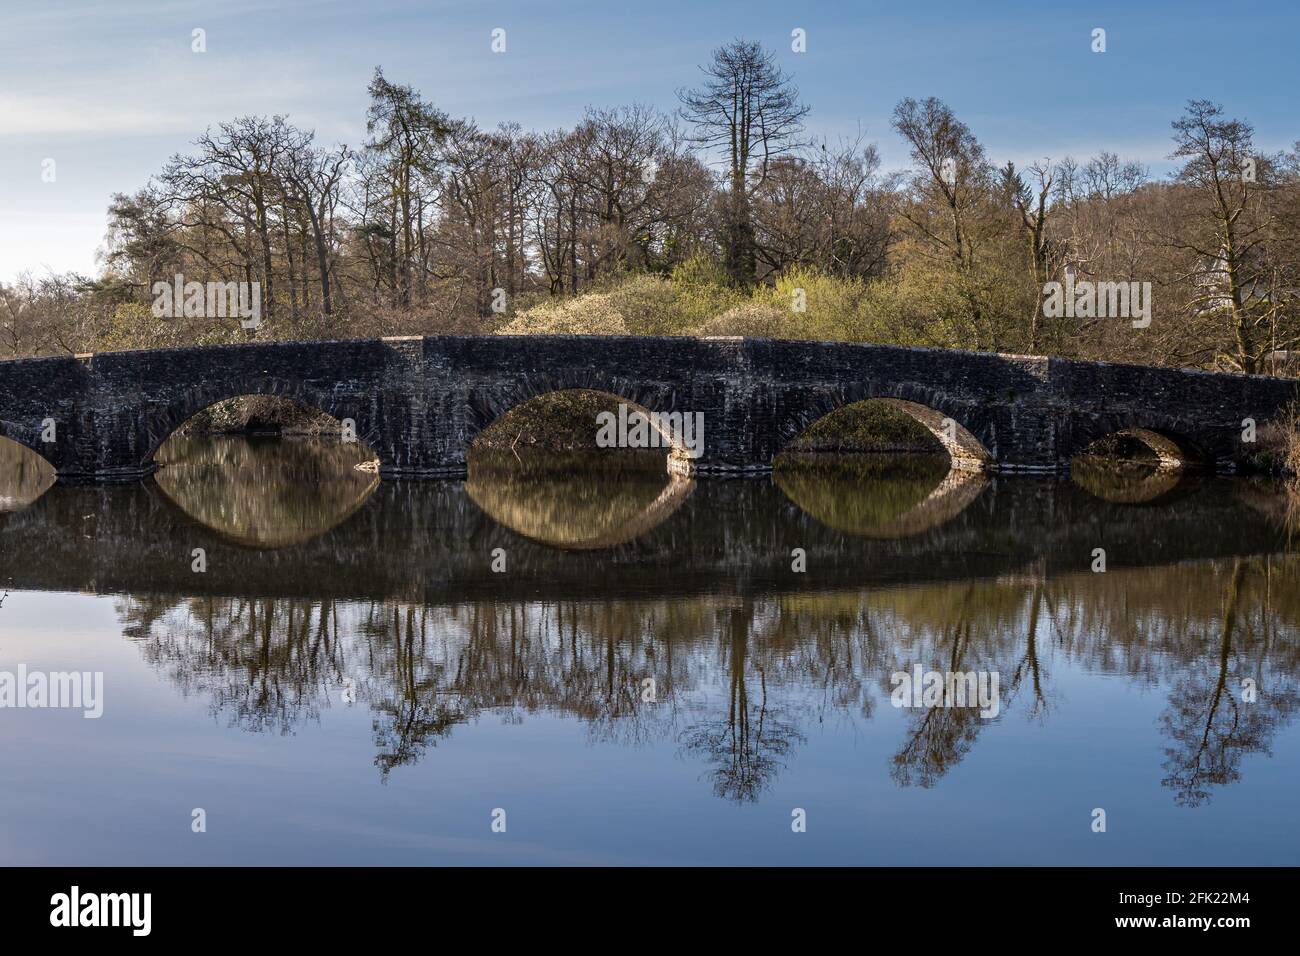 Début de matinée, reflet semblable à un miroir du pont au-dessus de la rivière Leven au pont Newby Banque D'Images